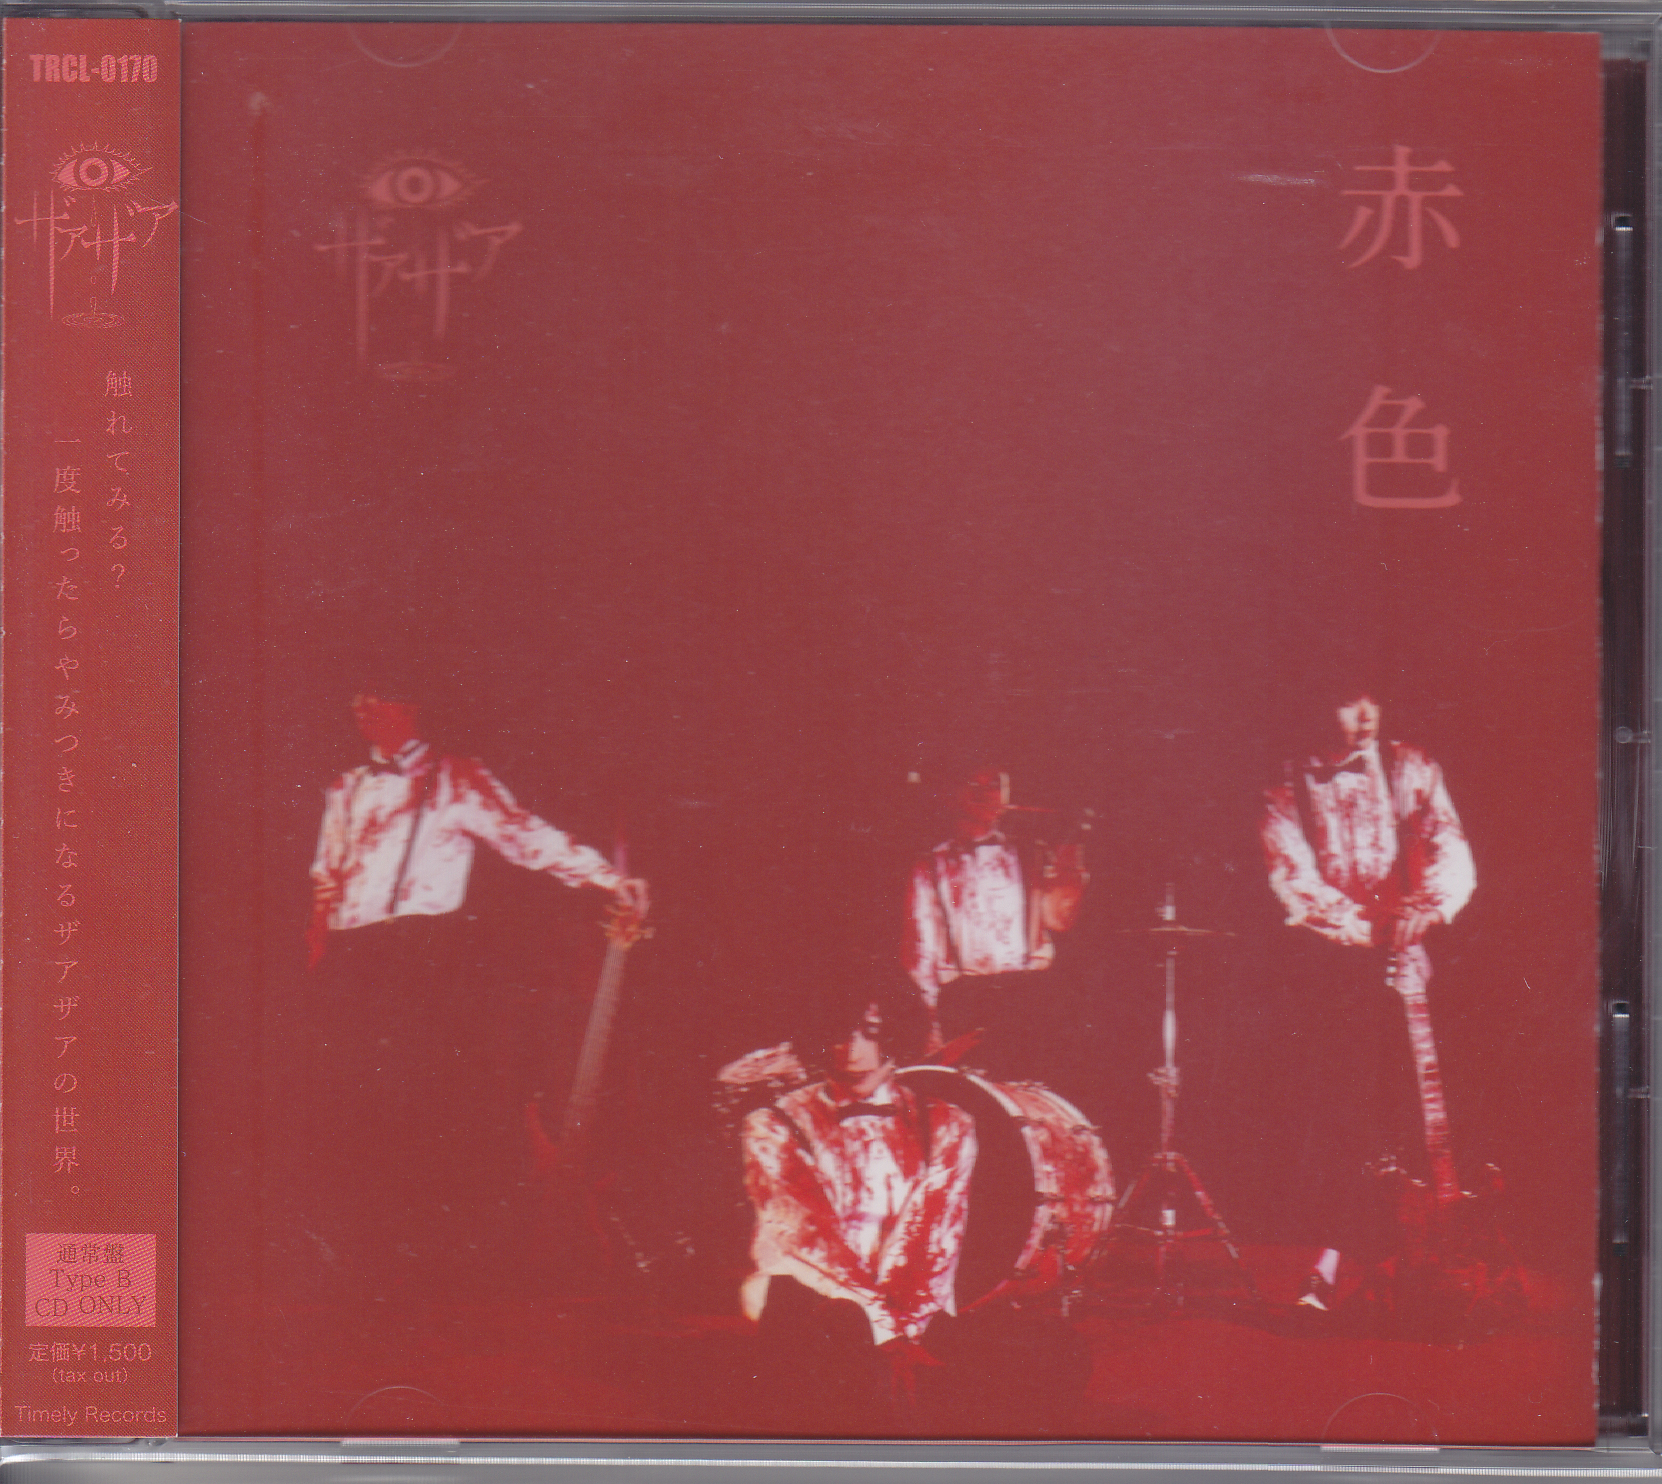 ザアザア の CD 【Btype】赤色